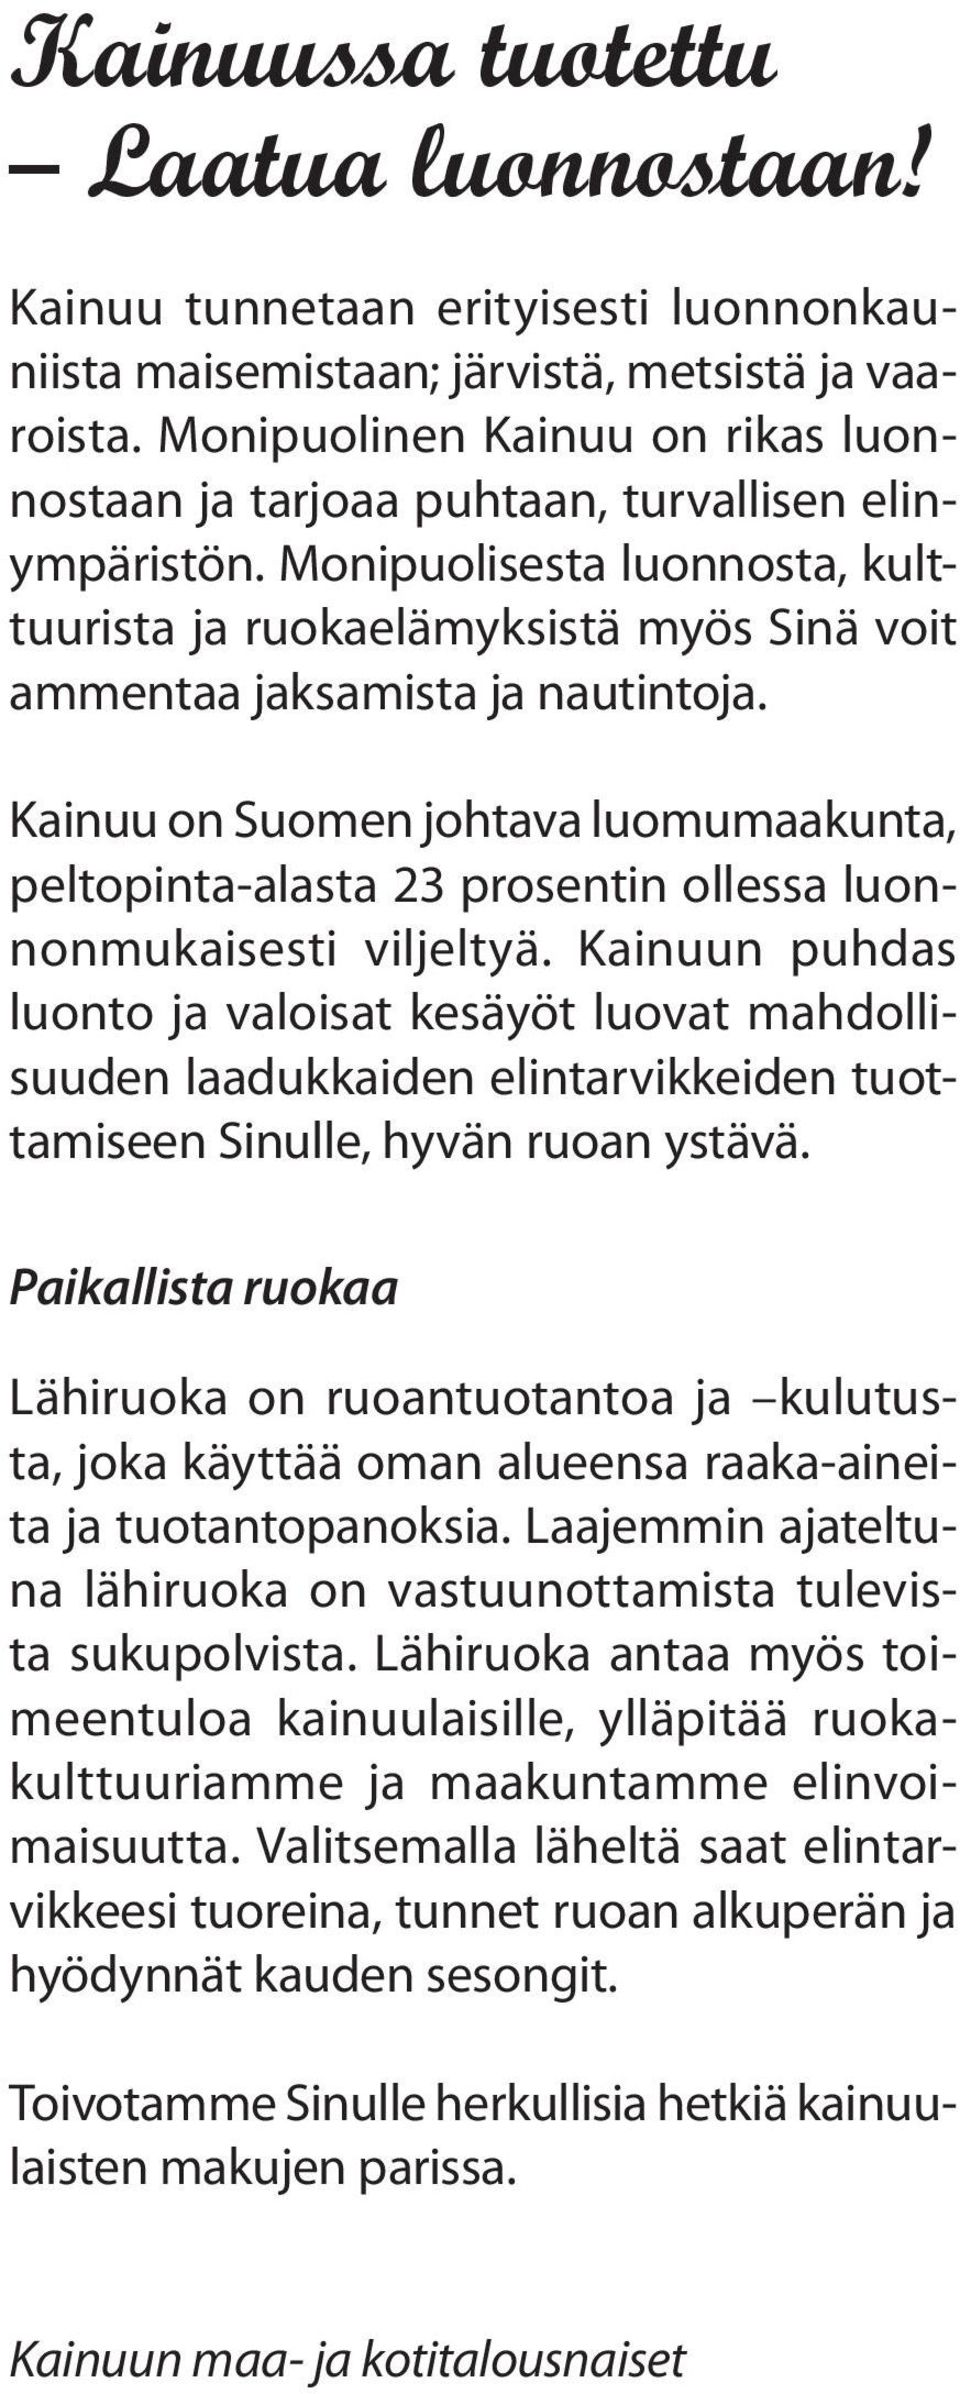 Kainuu on Suomen johtava luomumaakunta, peltopinta-alasta 23 prosentin ollessa luonnonmukaisesti viljeltyä.